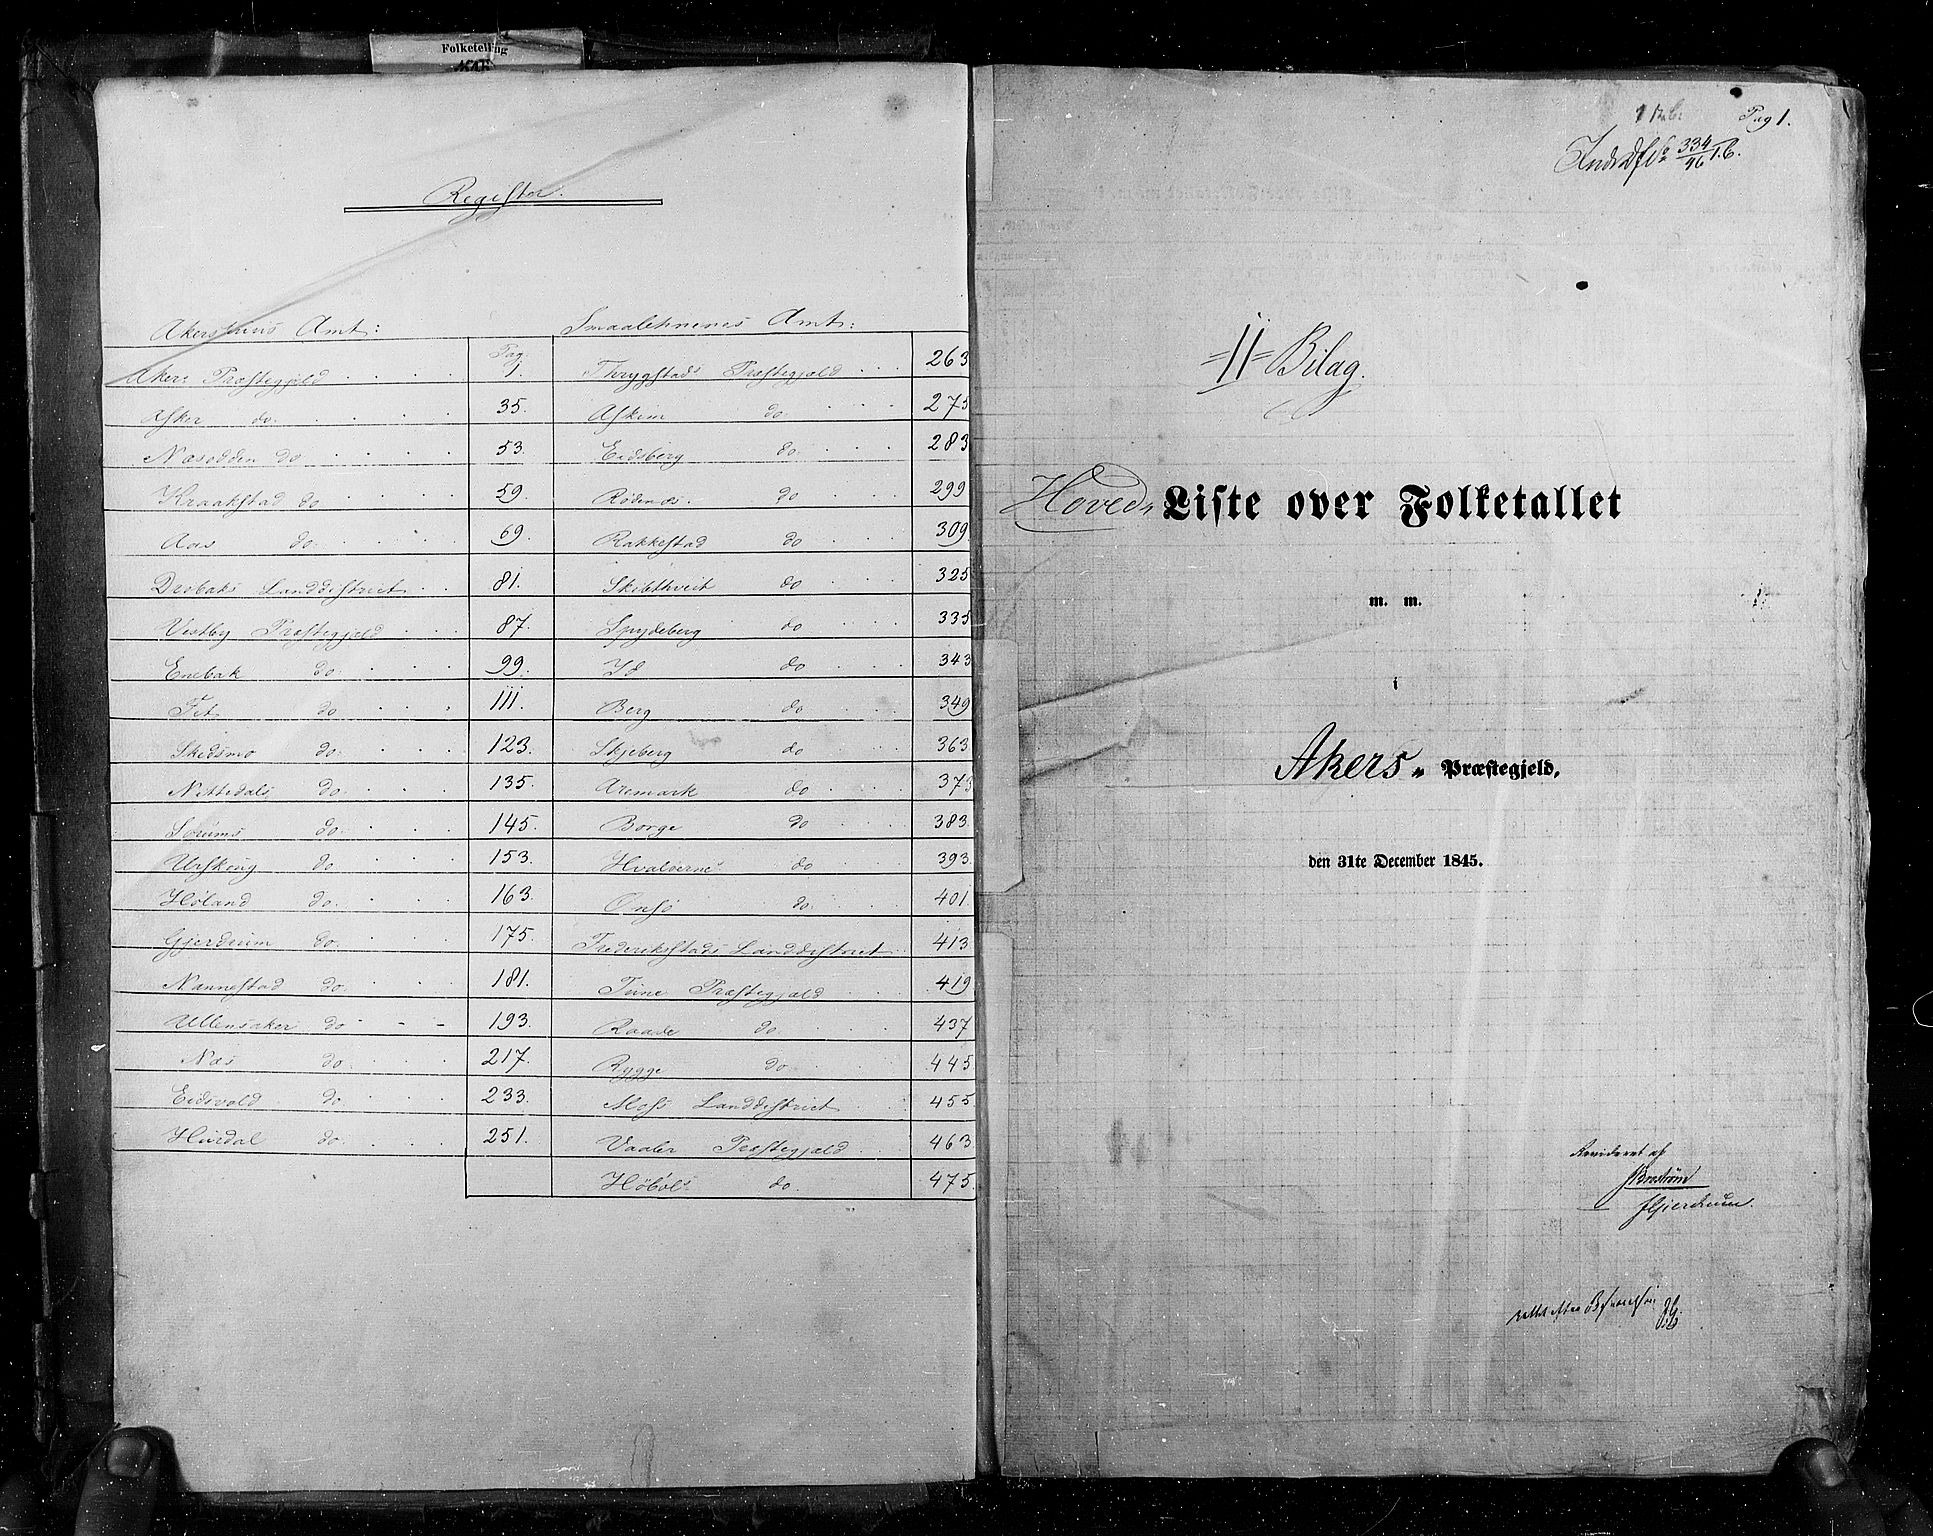 RA, Census 1845, vol. 2: Smålenenes amt og Akershus amt, 1845, p. 1